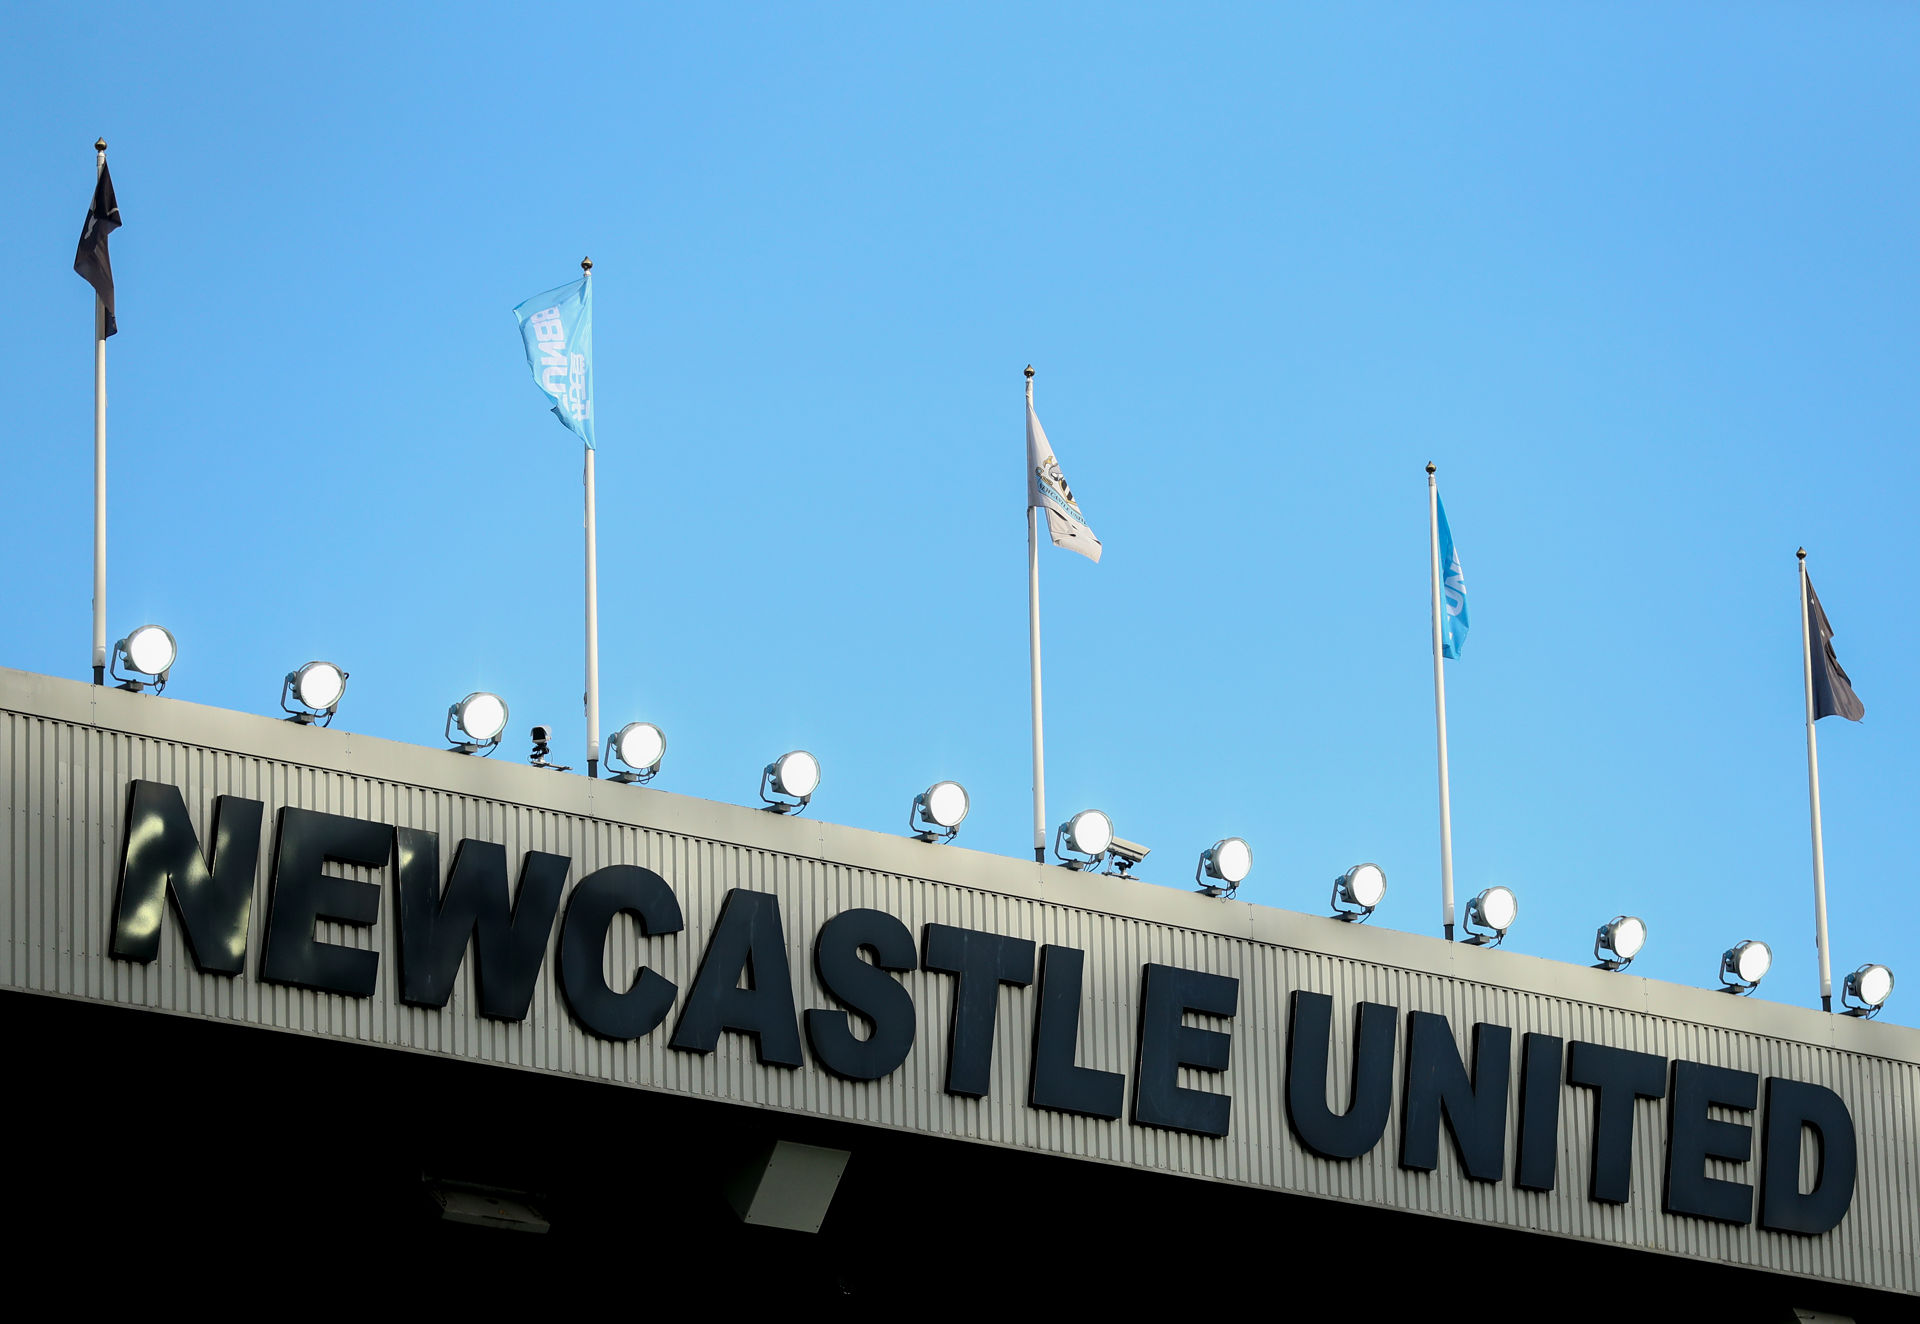 Newcastle : Lingard, Winks, Barkley et Trippier, les Magpies veulent recruter Anglais